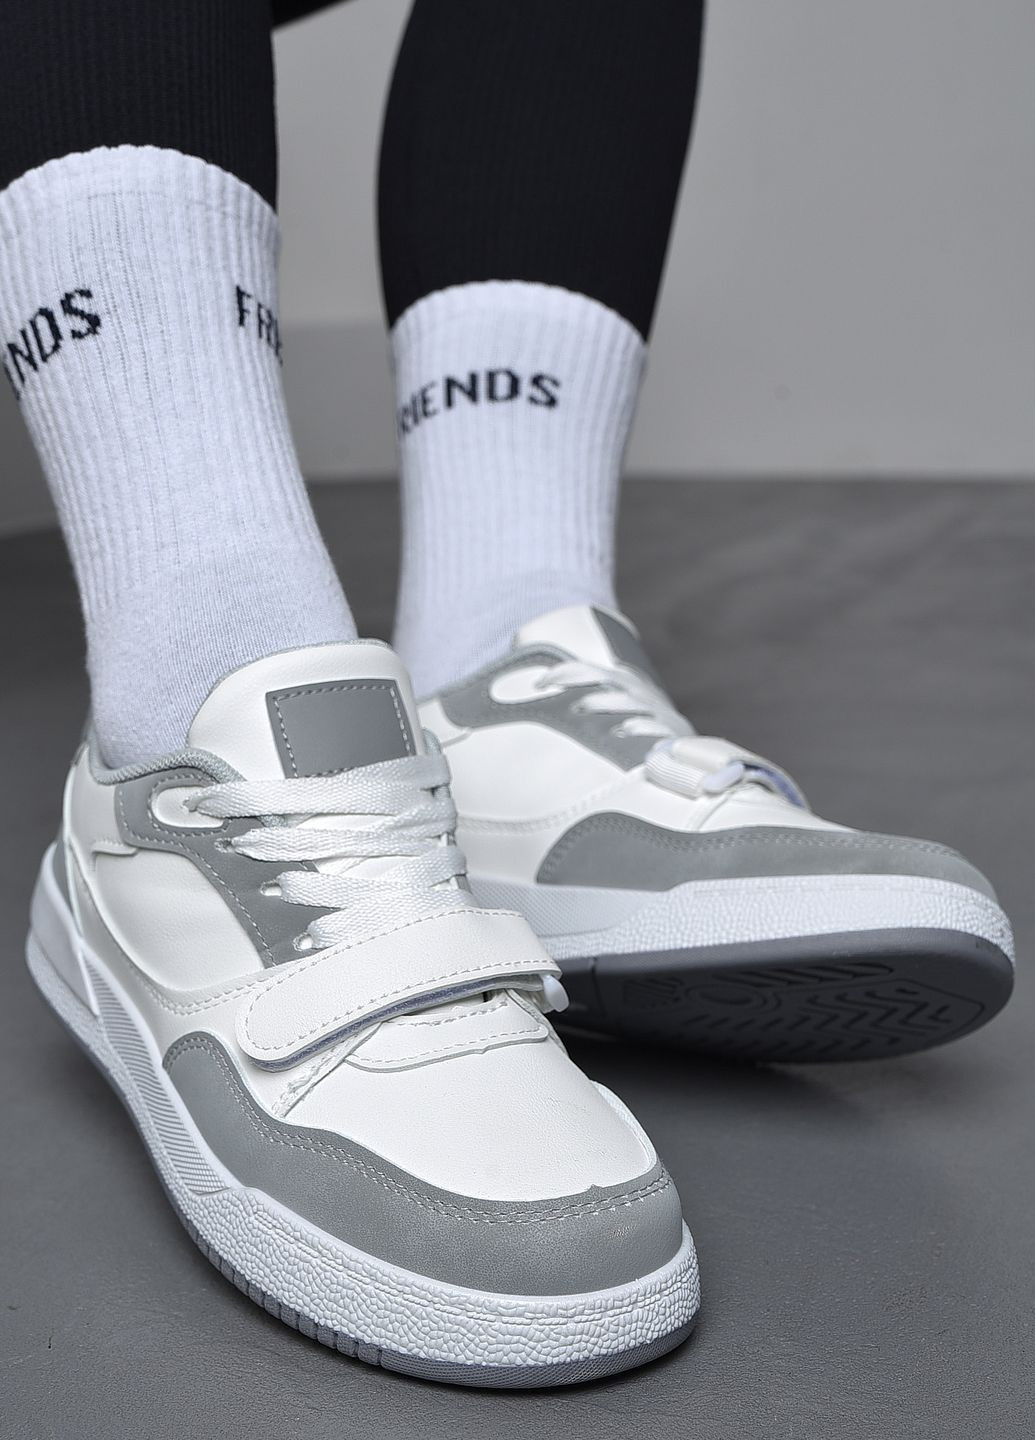 Білі осінні кросівки жіночі біло-сірого кольору на шнурівці Let's Shop